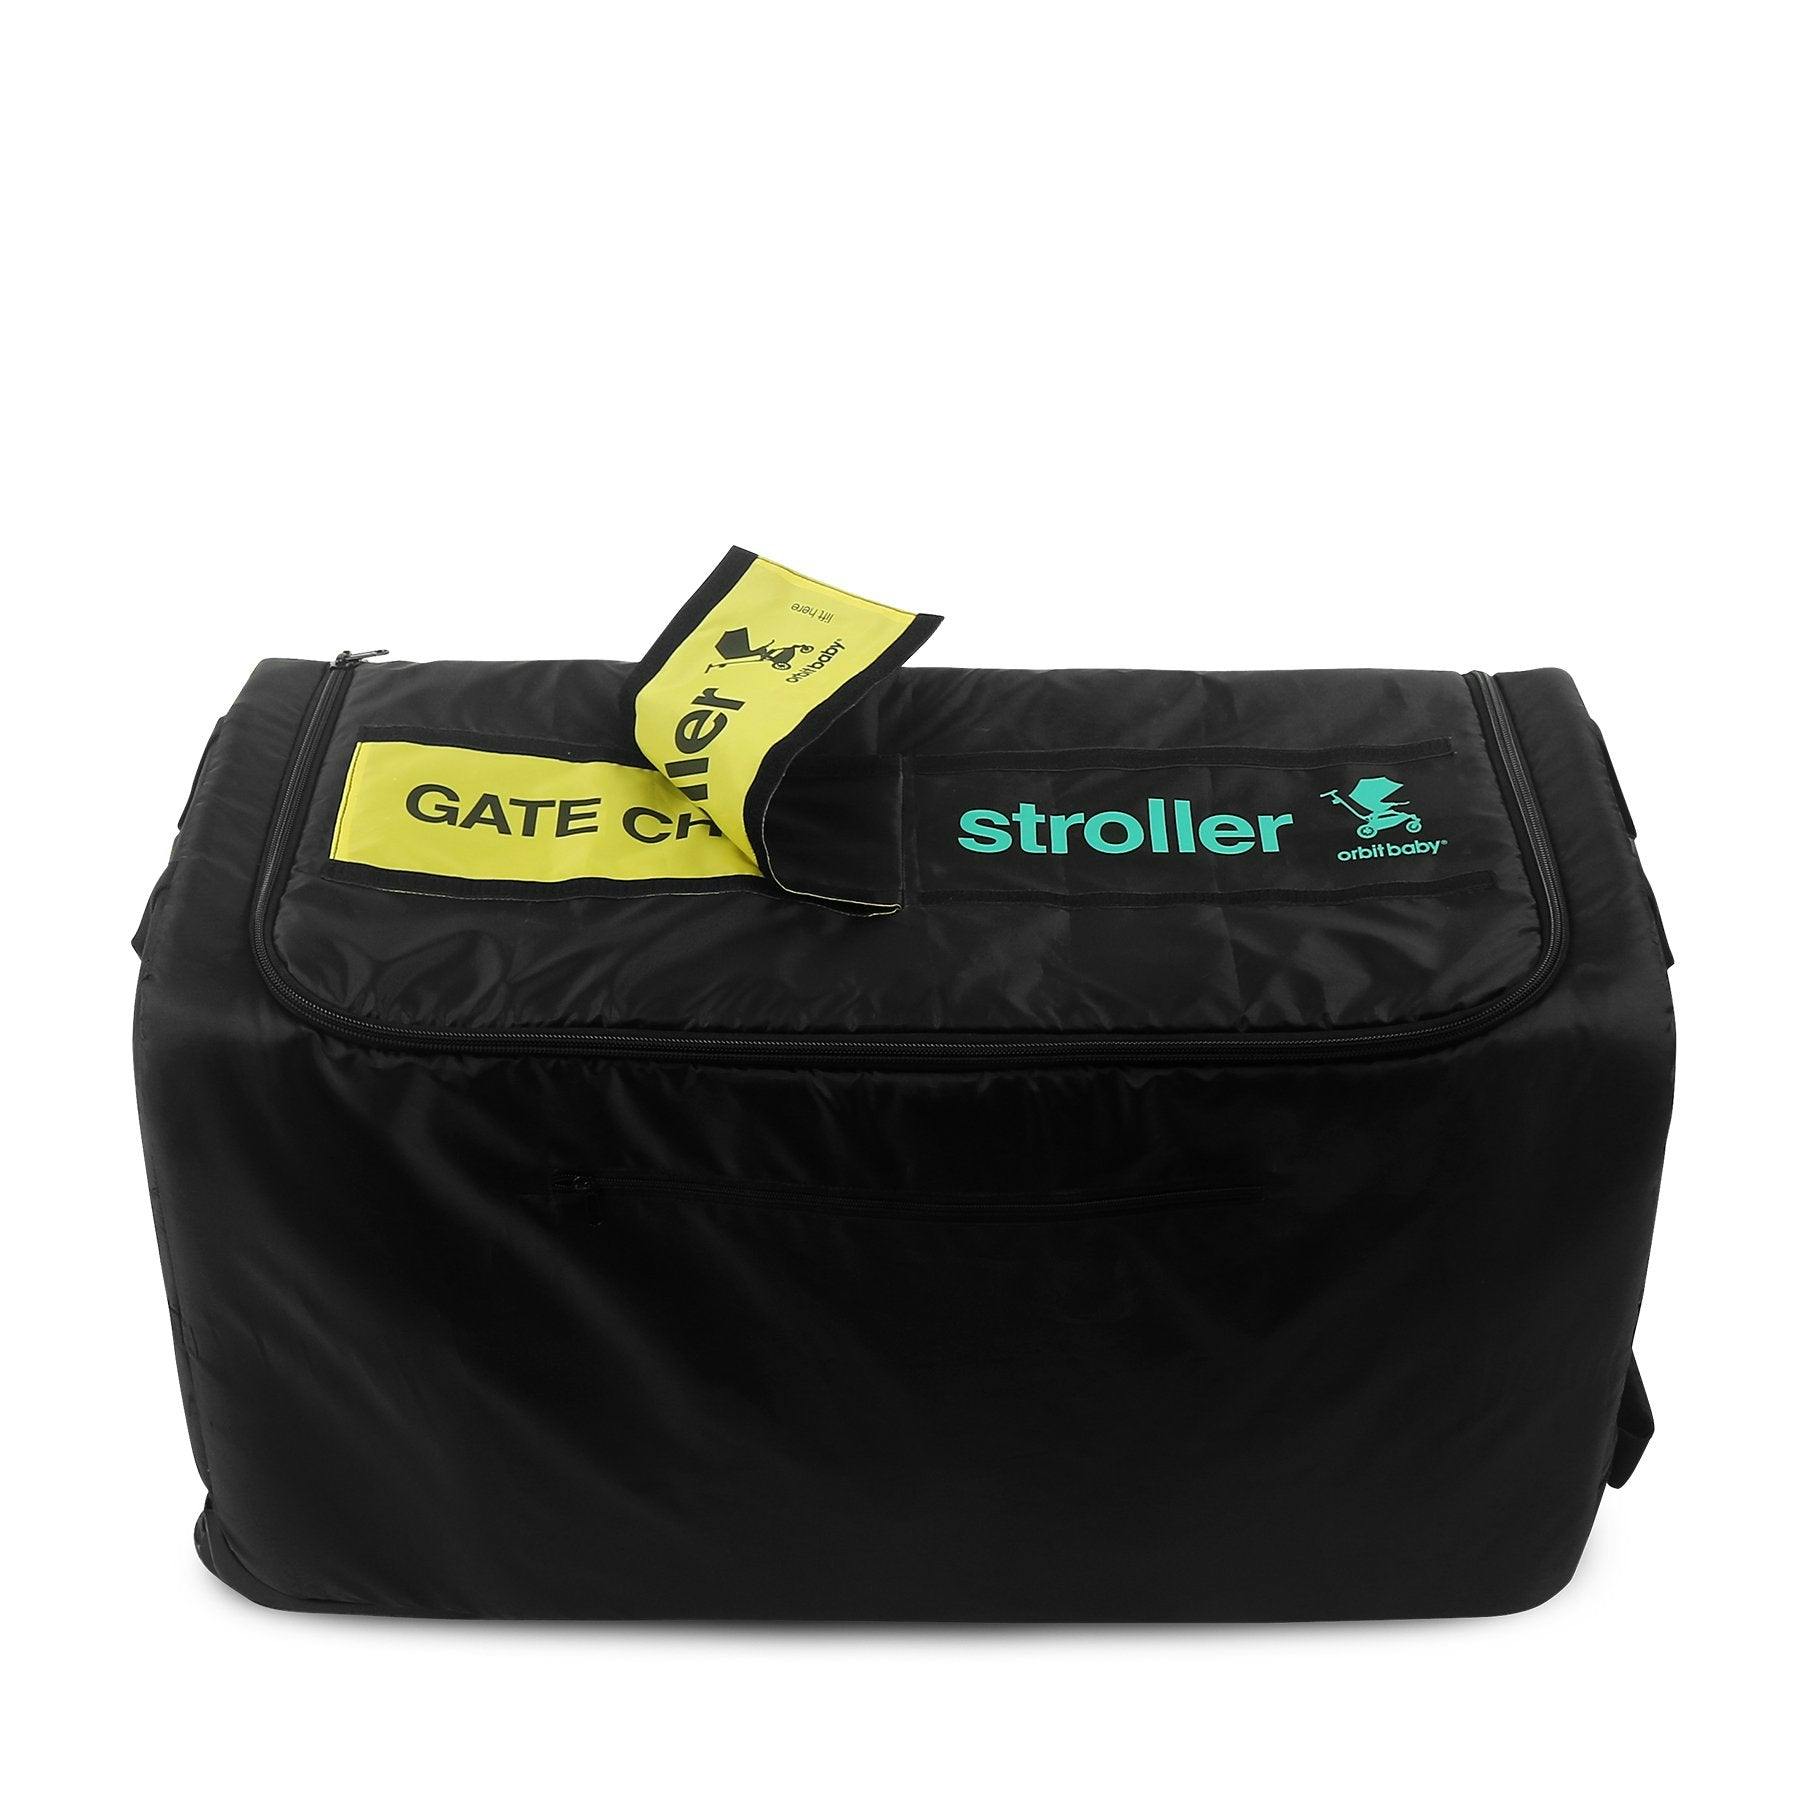 Orbit Baby G5 Stroller Travel Bag